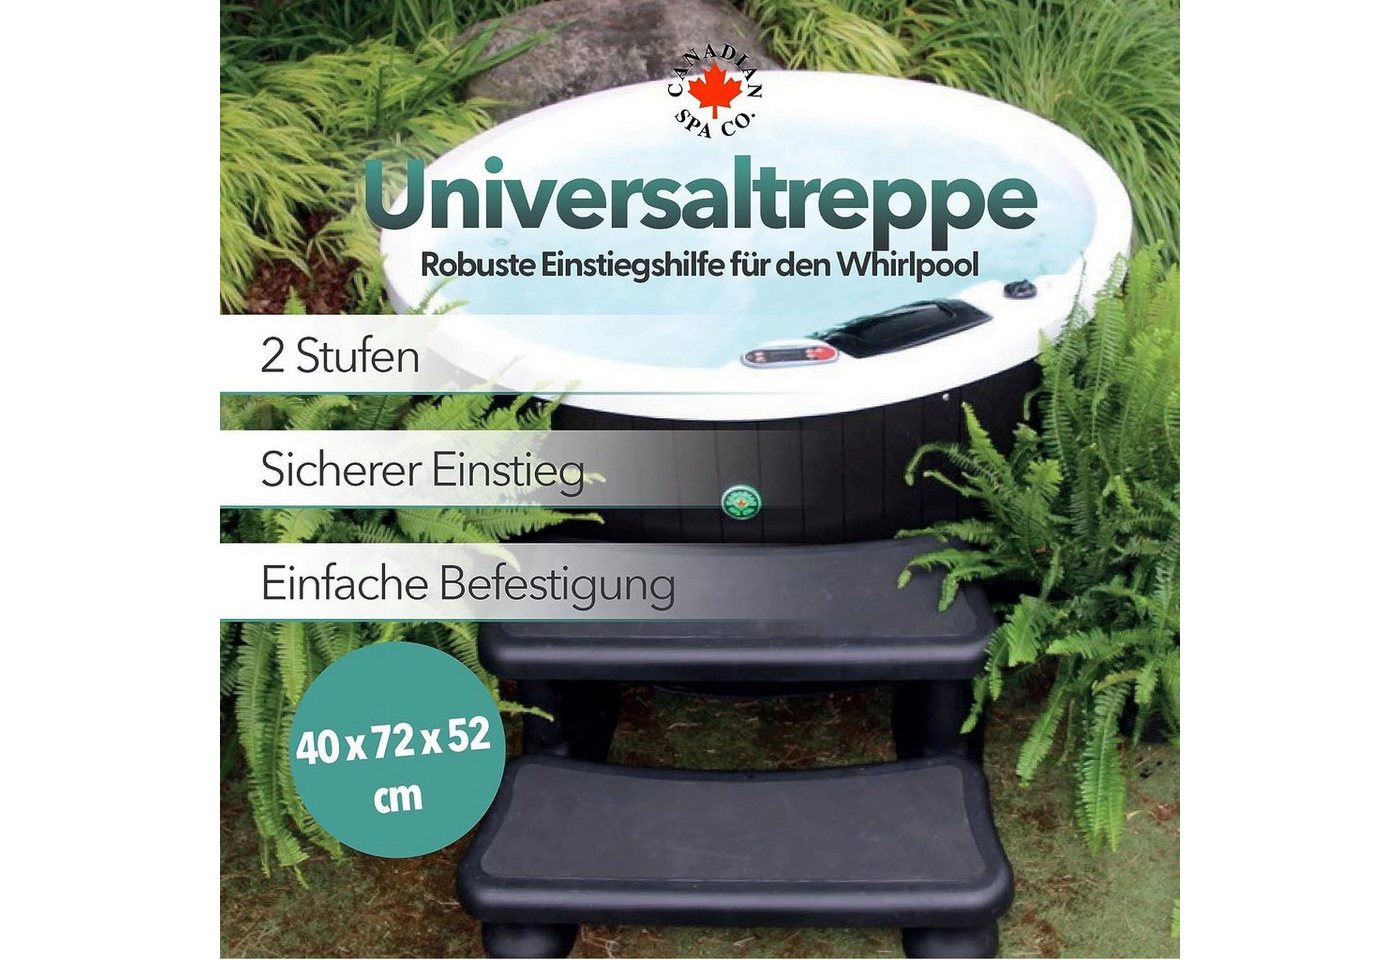 Canadian Spa GmbH Poolleiter Universal Treppe, 2 Stufen, 40 x 72 x 52 cm, Whirlpool treppe, rutschfest und tragbar. von Canadian Spa GmbH